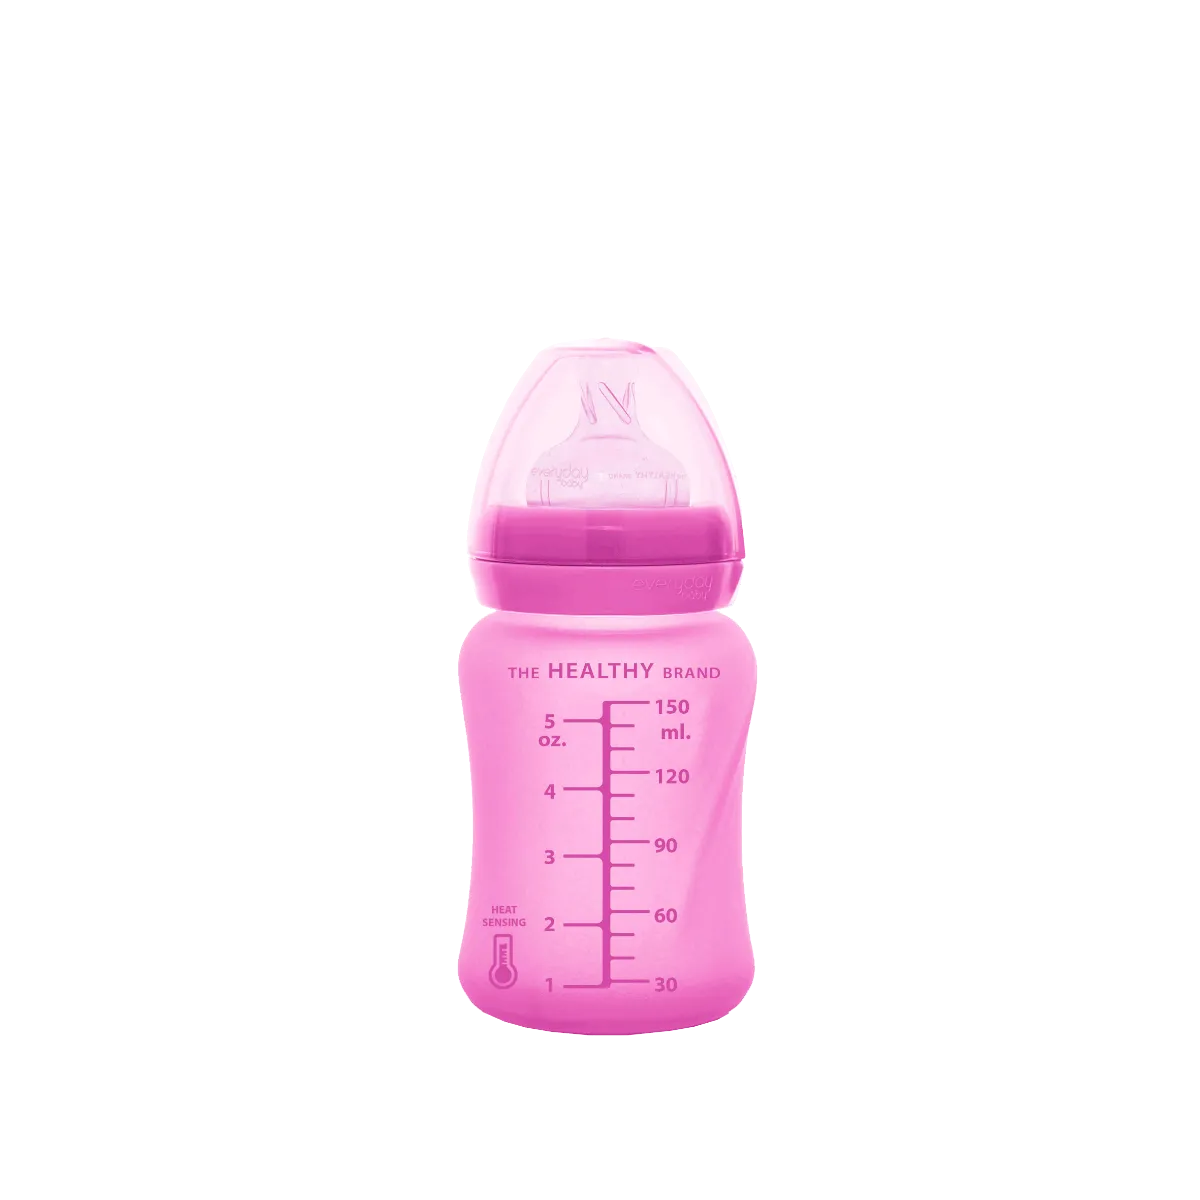 Everyday Baby szklana butelka ze smoczkiem S, różowa, 1 szt.